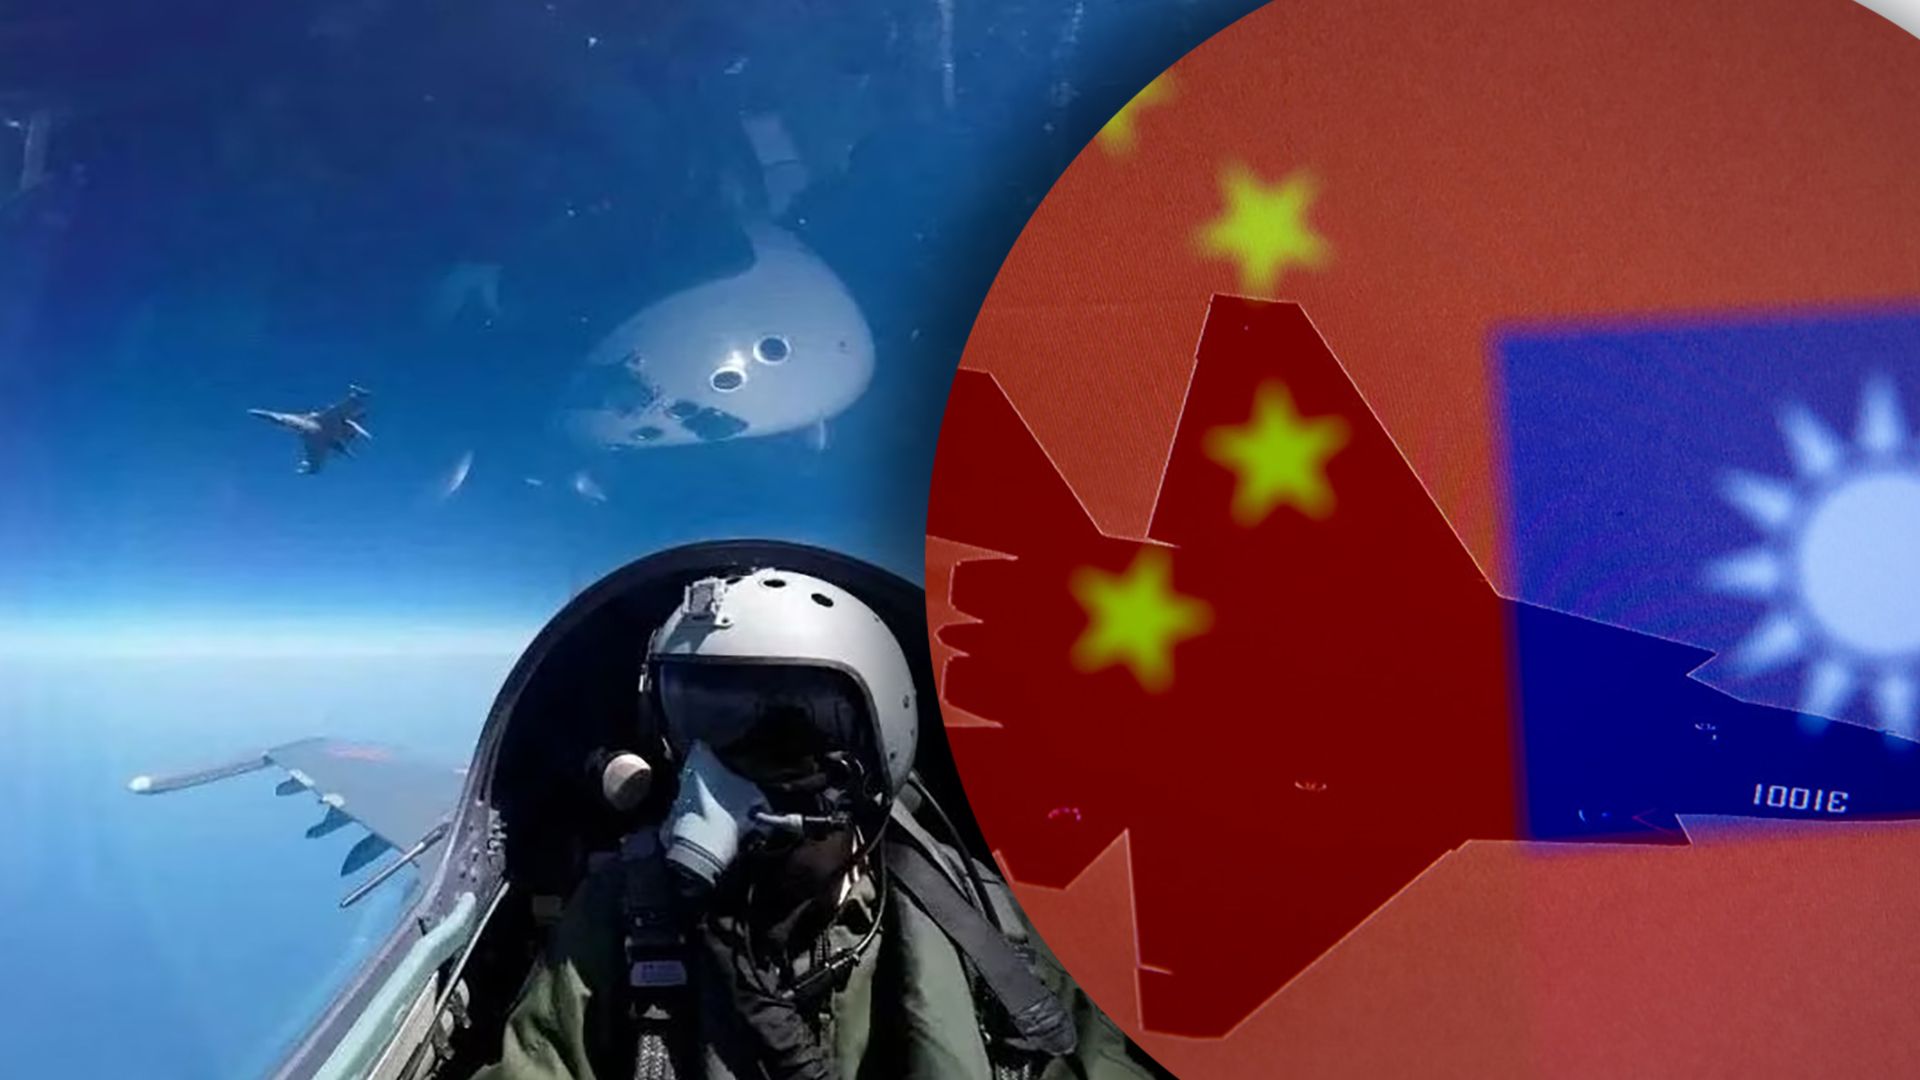 Імітаційні удари Китаю на острові Тайвань